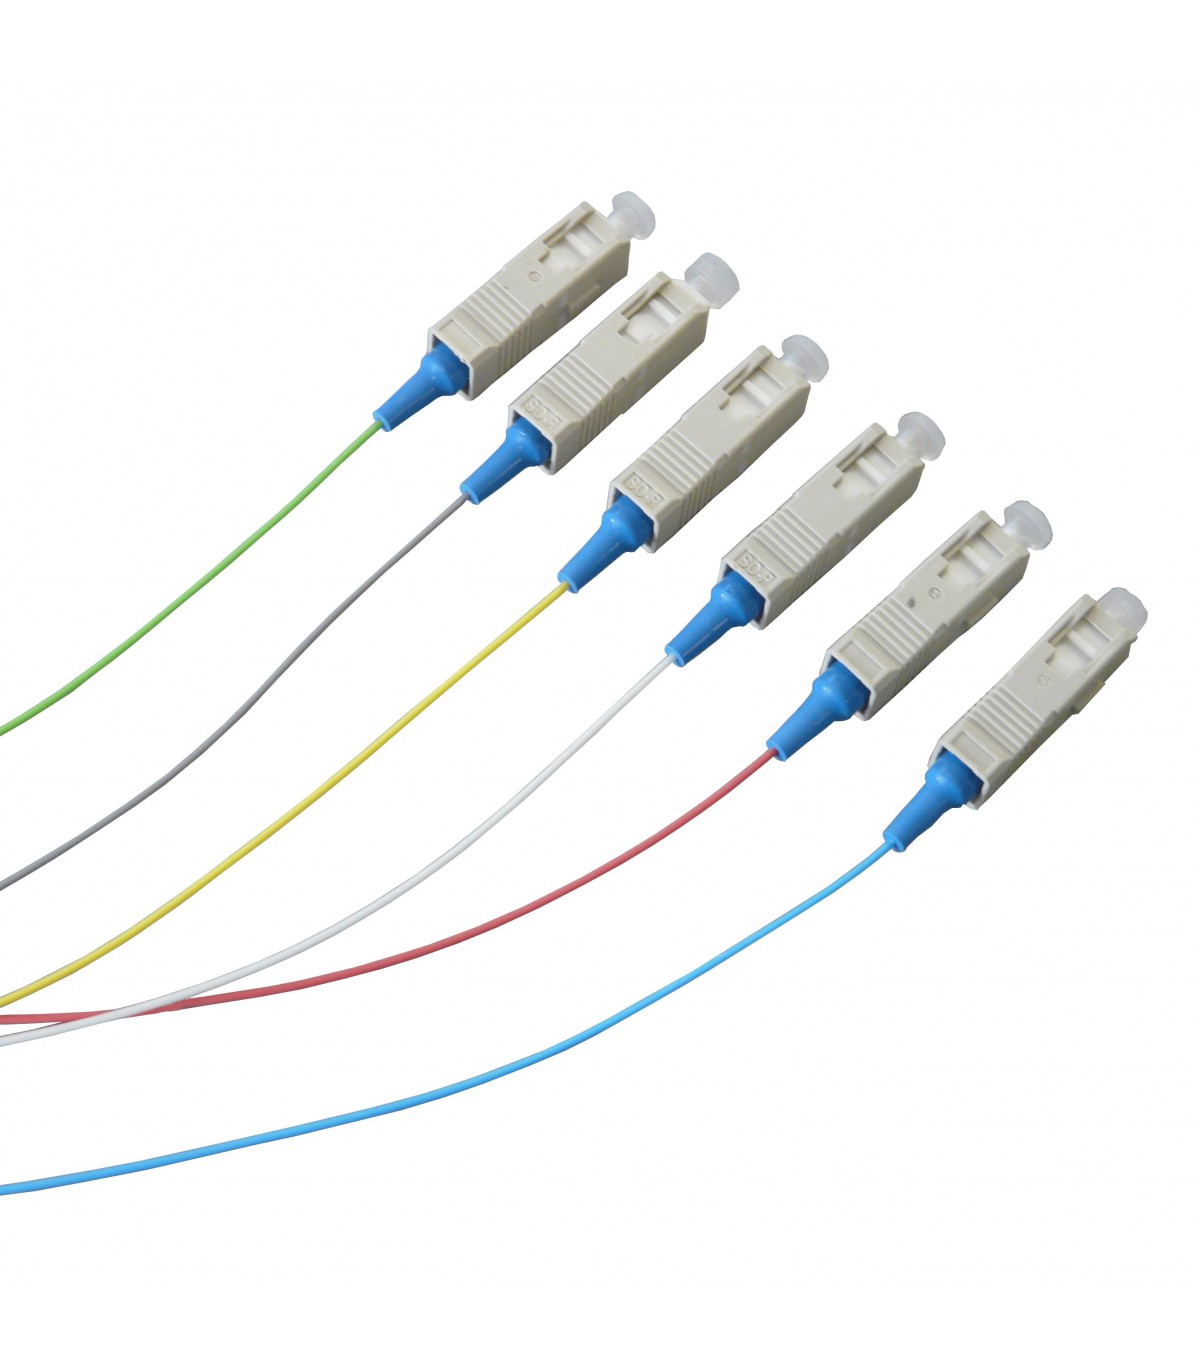 BeMatik - Câble à fibre optique monomode (SM) de longueur 50 cm.